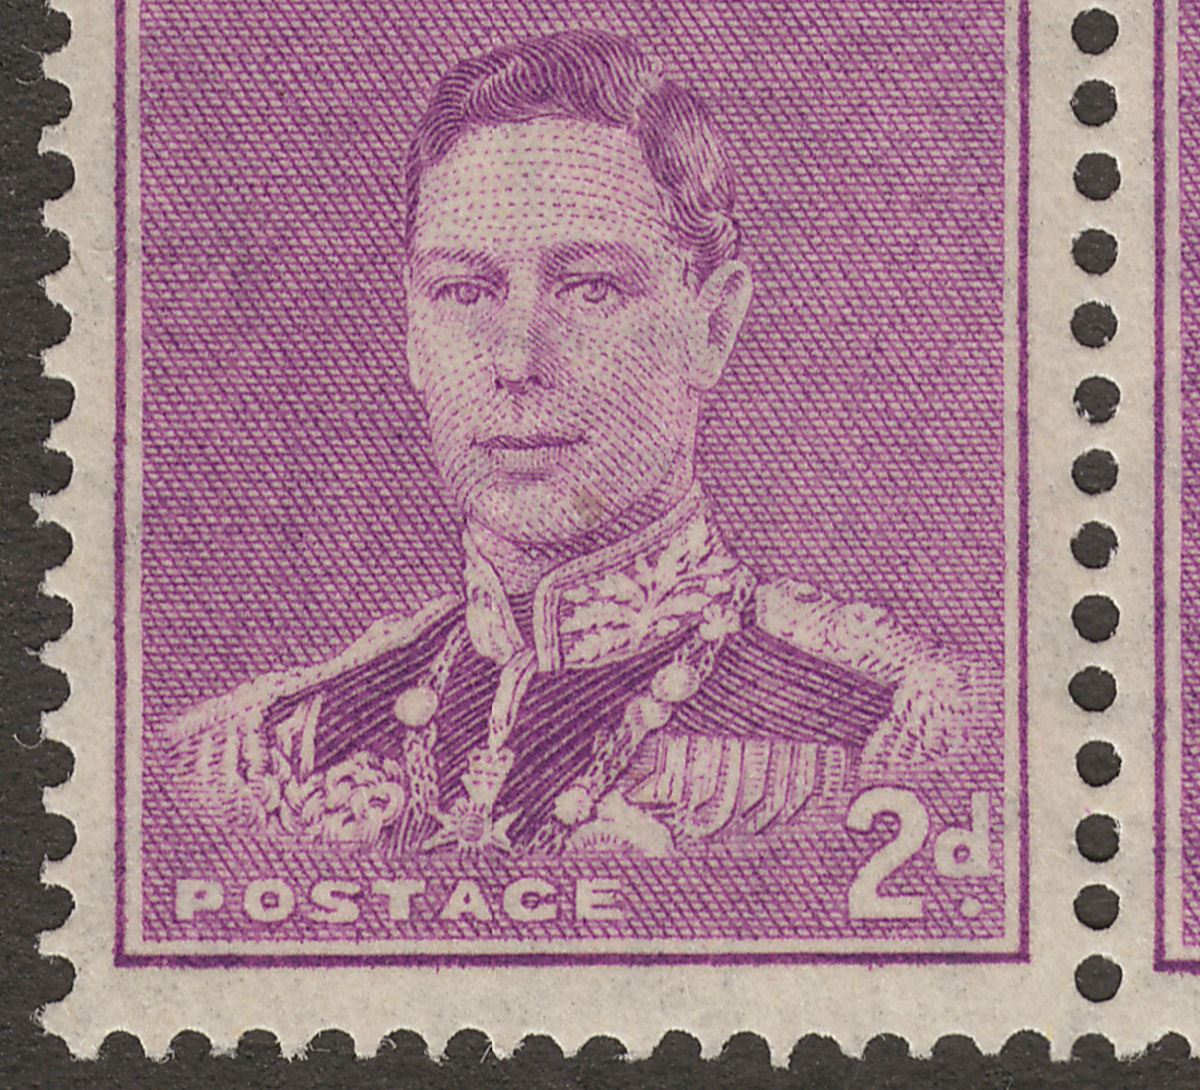 Australia 1941 KGVI 2d Bright Purple Block of 8 w Medal Flaw Mint SG185b cat £85